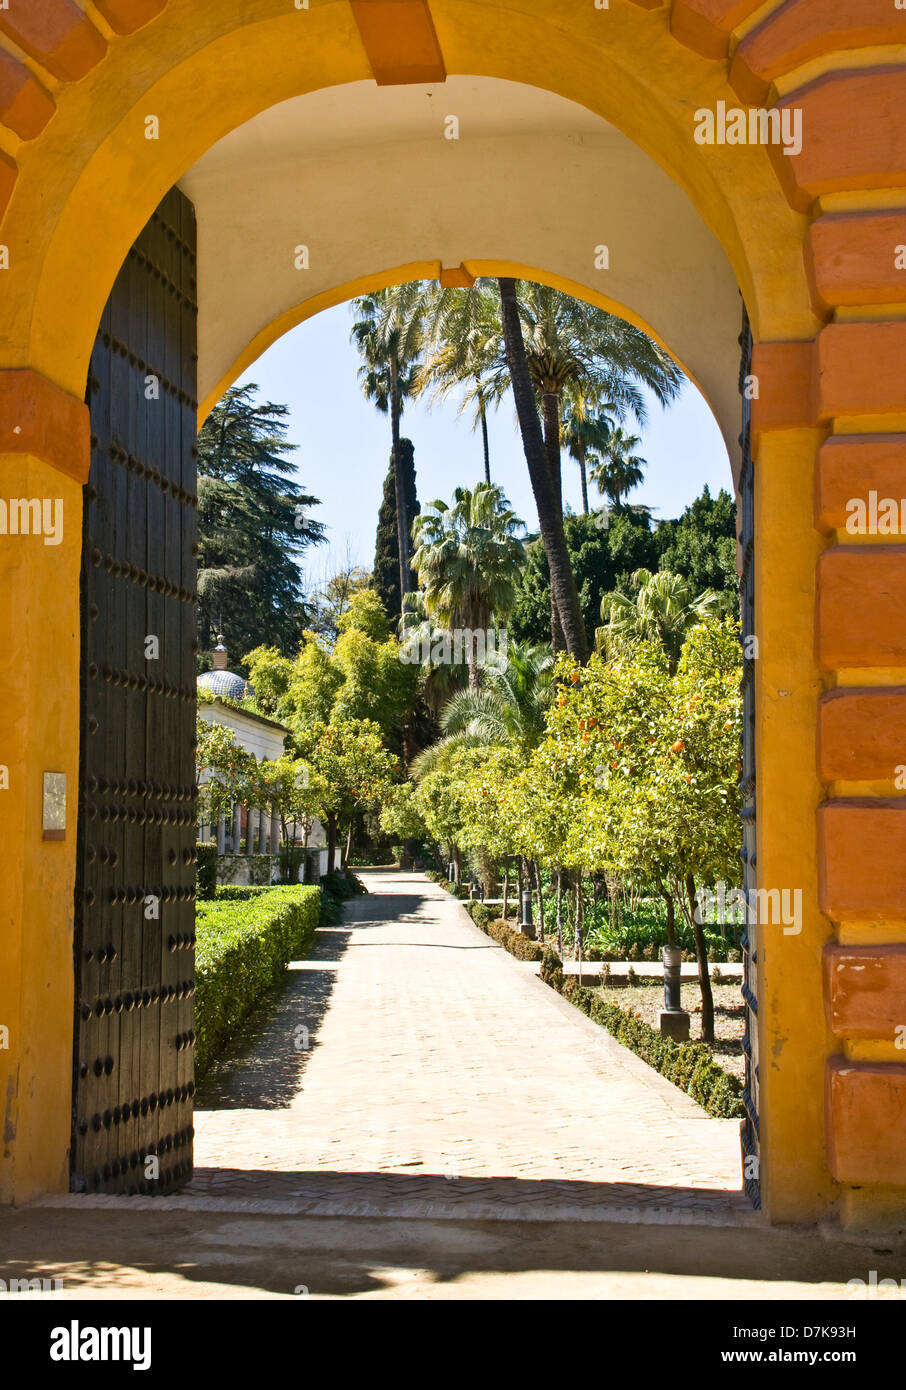 Porte d'entrée d'Archway Alcazar Gardens site du patrimoine mondial de l'UNESCO Séville Andalousie Andalousie Espagne Europe Banque D'Images